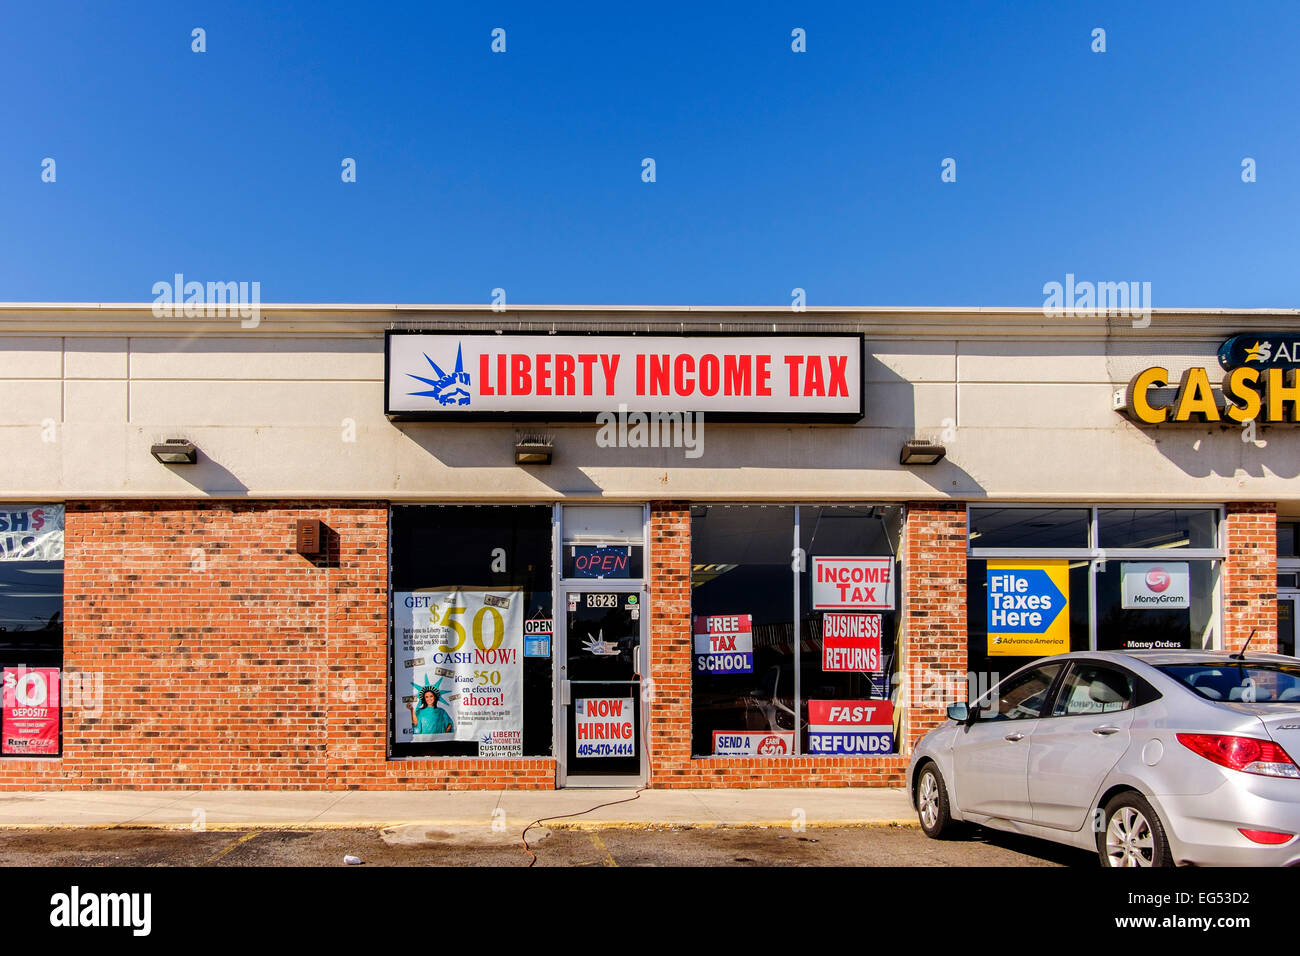 La devanture d'une entreprise de préparation d'impôt sur le revenu Impôt sur le revenu, appelé Liberty à Oklahoma City, Oklahoma, USA. Banque D'Images